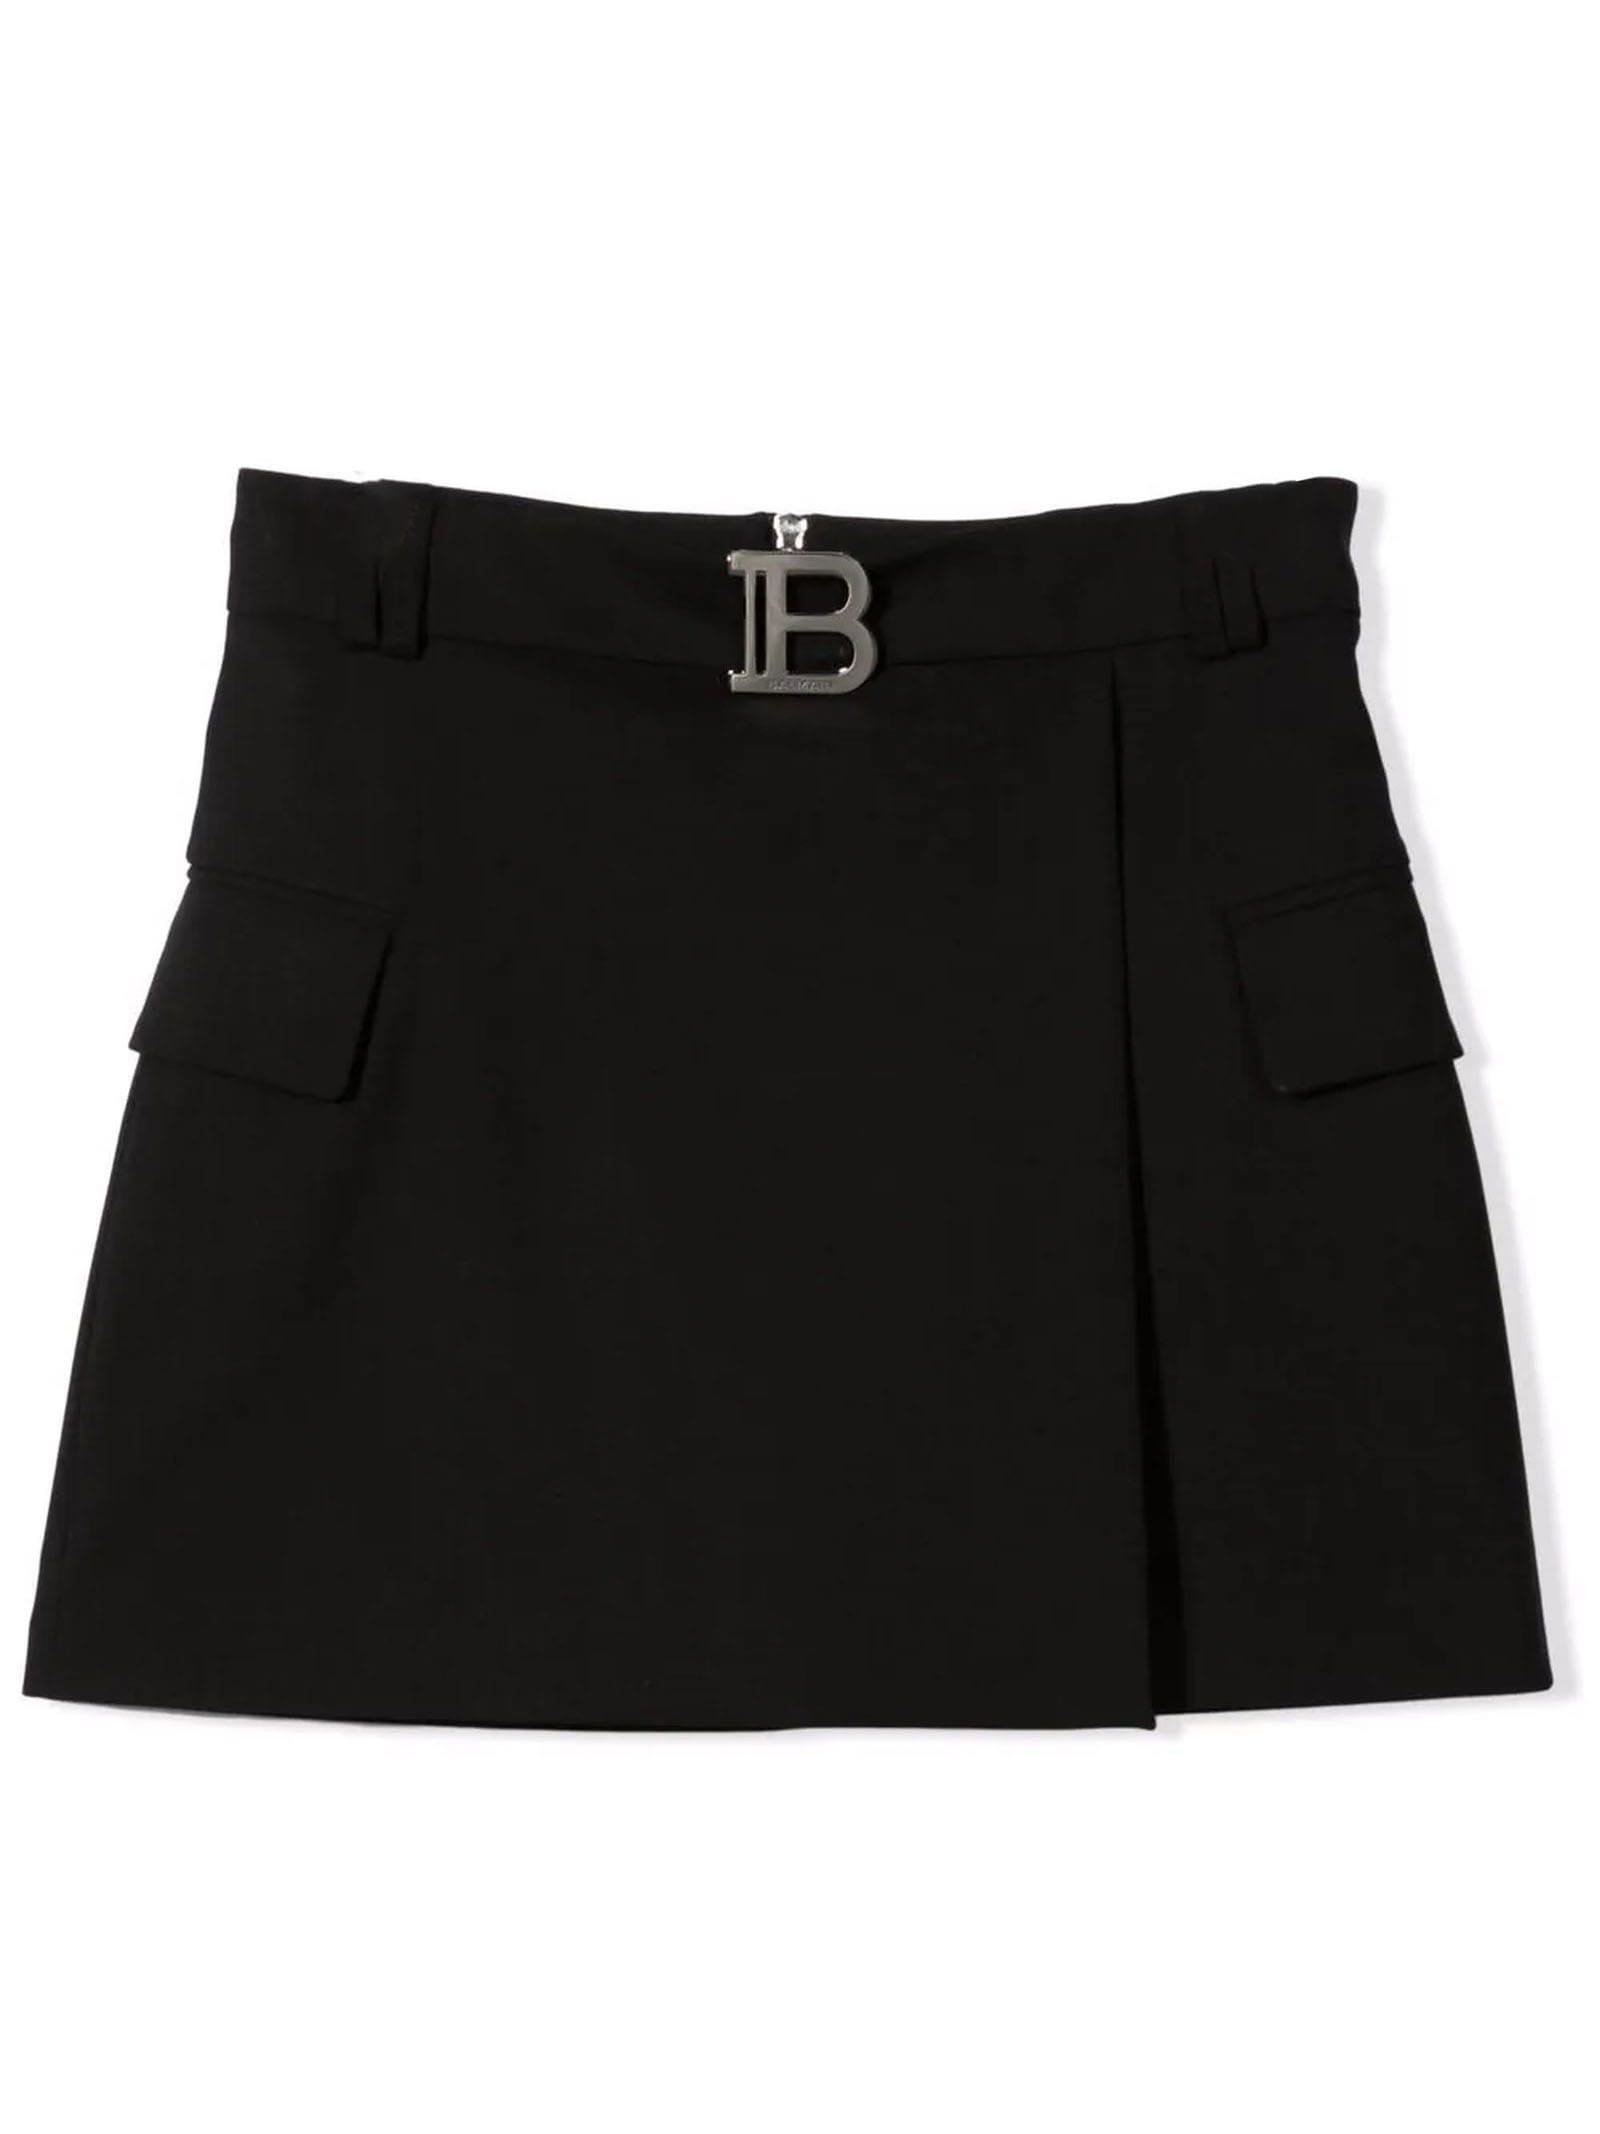 Balmain Black Wool Blend Skirt